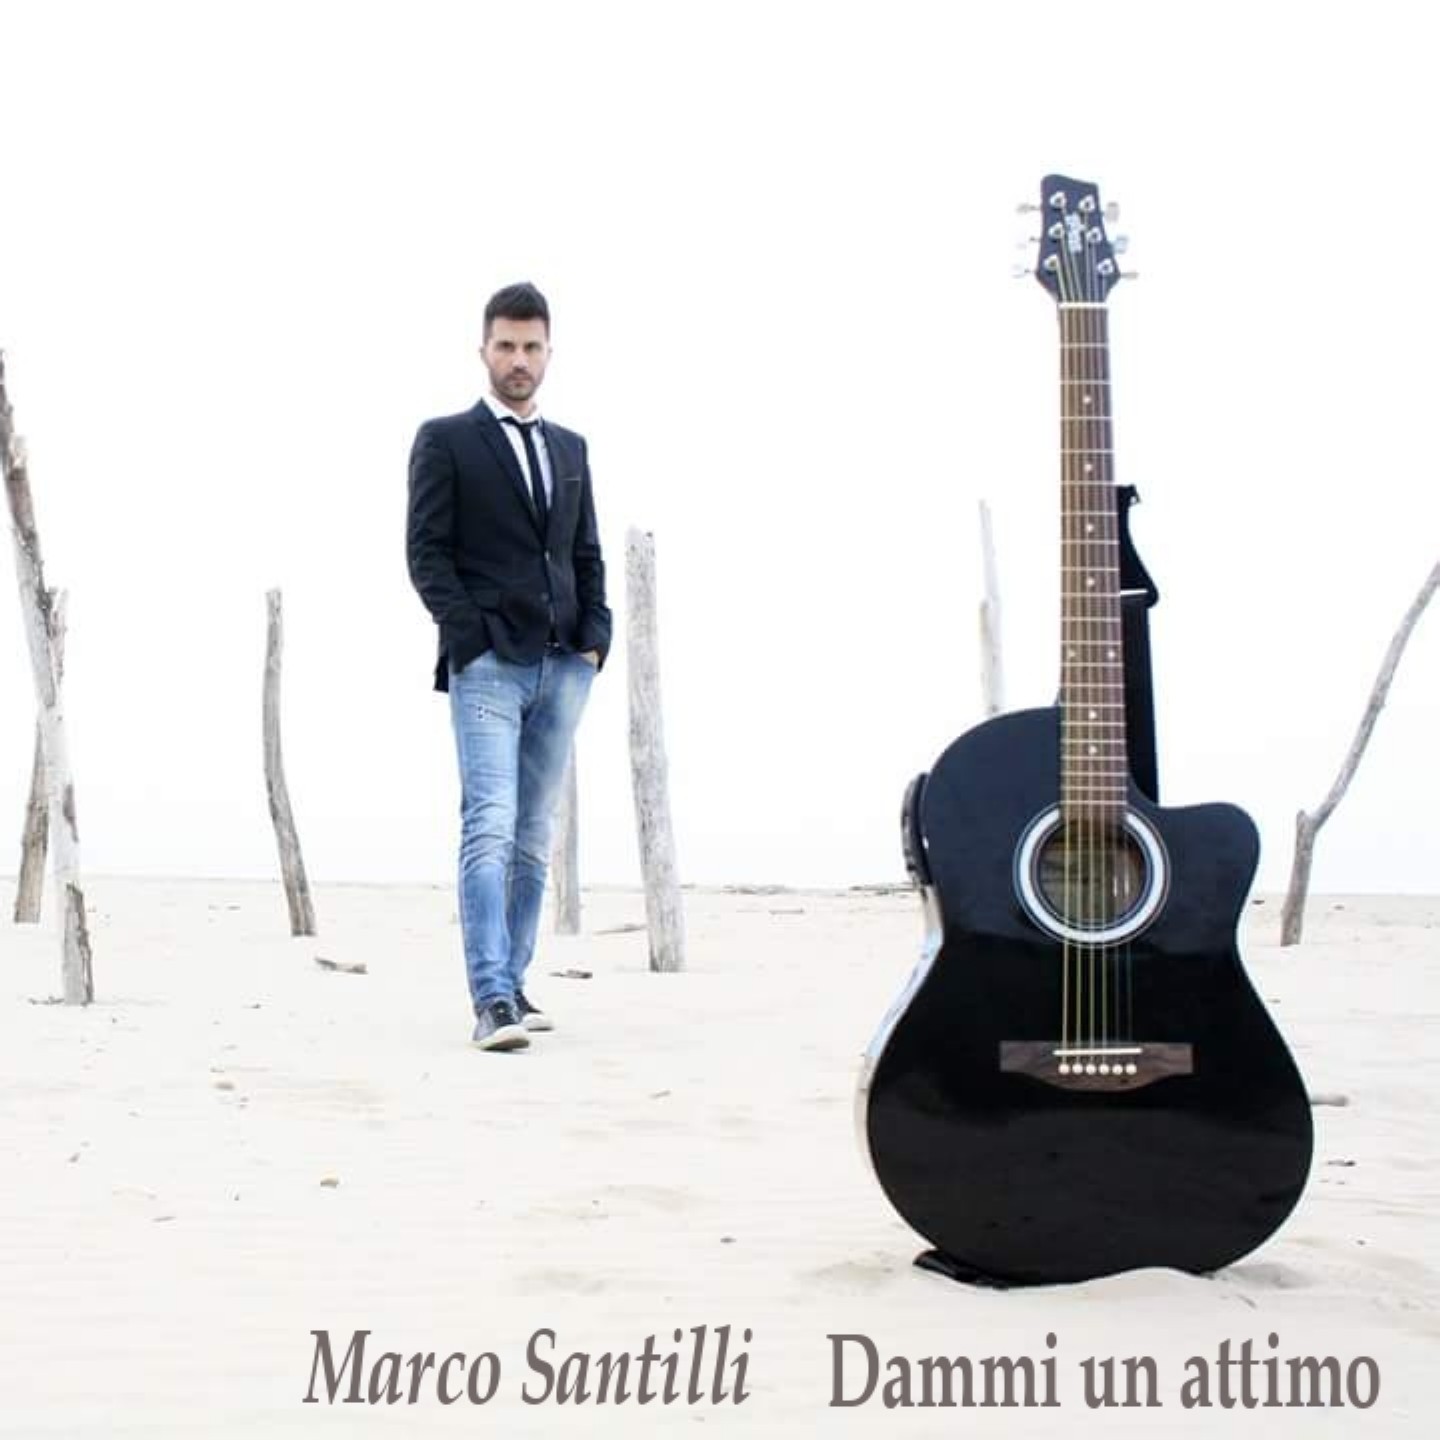 “Dammi un attimo” il nuovo singolo del cantautore Marco Santilli. Nel video anche Laura Freddi “Dammi un attimo”, una canzone dove lei ripensa a sposarlo, perché riceve altre vibrazioni, in […]